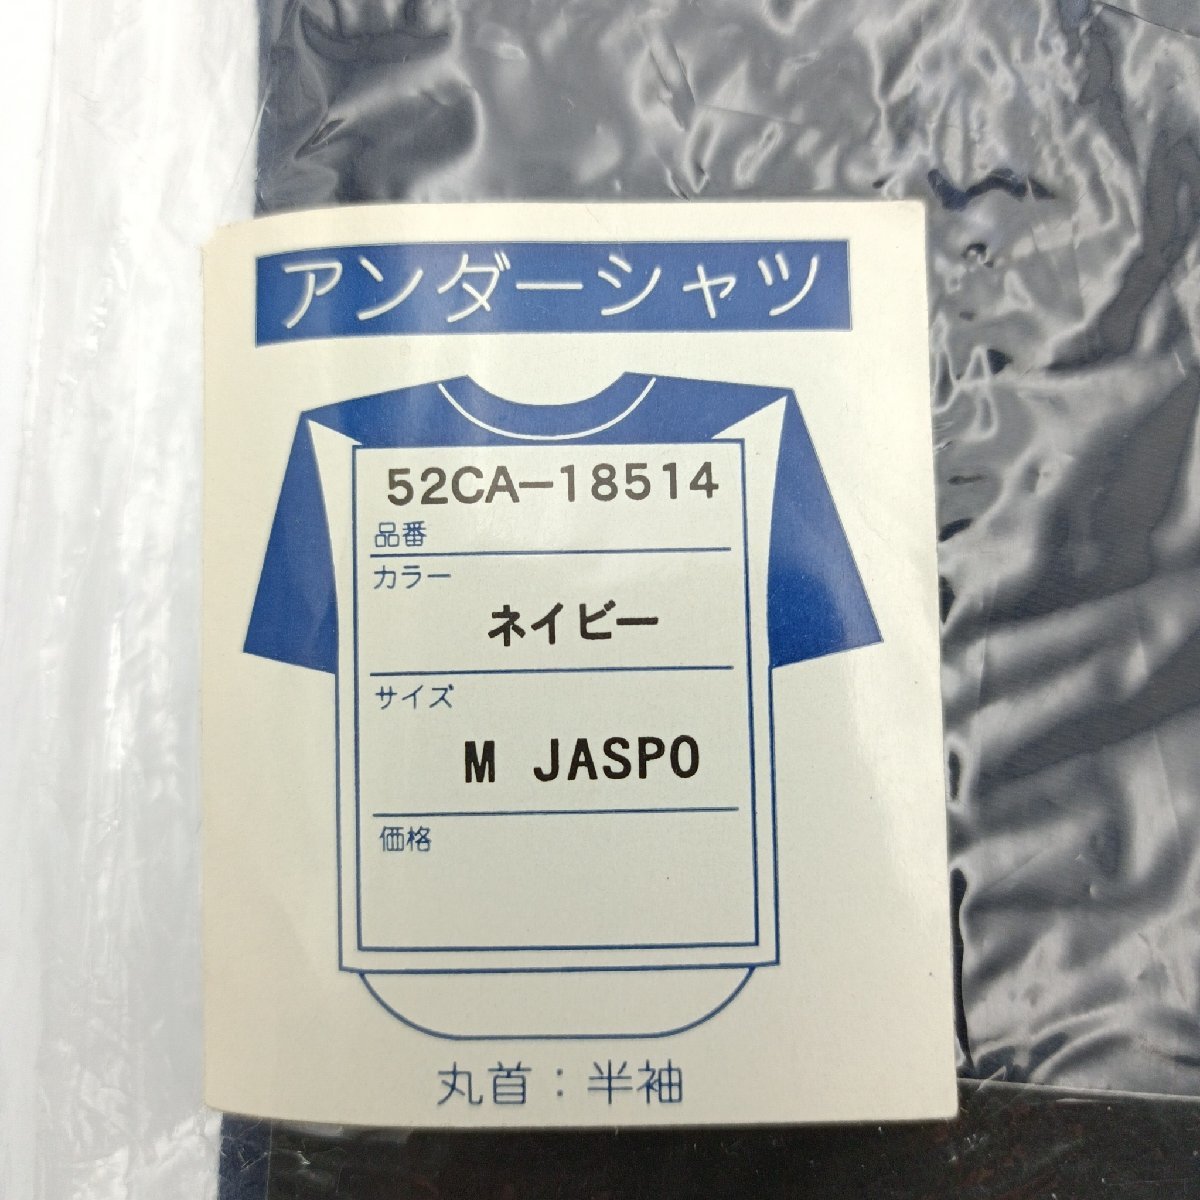  бейсбол нижняя рубашка Mizuno MizunoPro Mizuno Mizuno Pro размер M темно-синий круглый вырез короткий рукав хлопок полиэстер сделано в Японии [ дорога приятный Sapporo ]